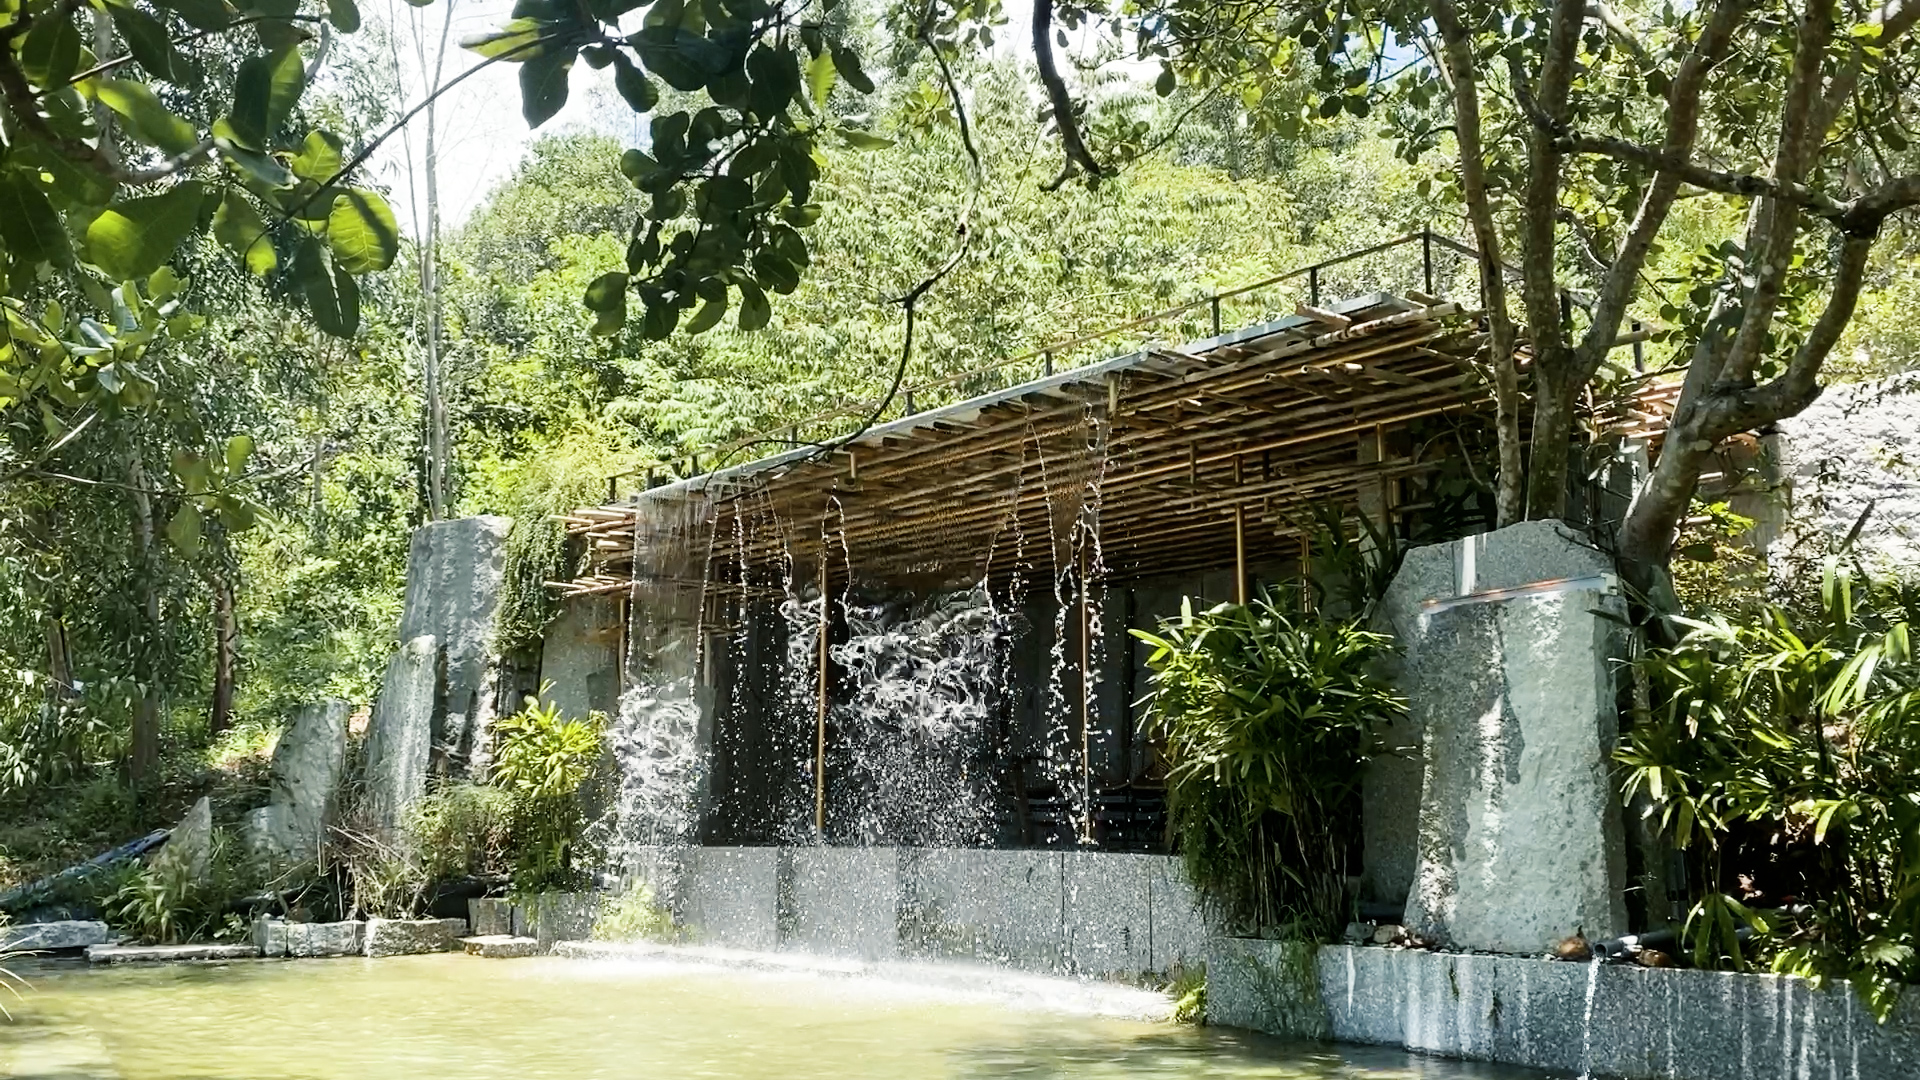 Xu hướng tắm ta ‘hút’ khách Việt: Tắm cùng nhau, trở về với thiên nhiên - Ảnh 3.